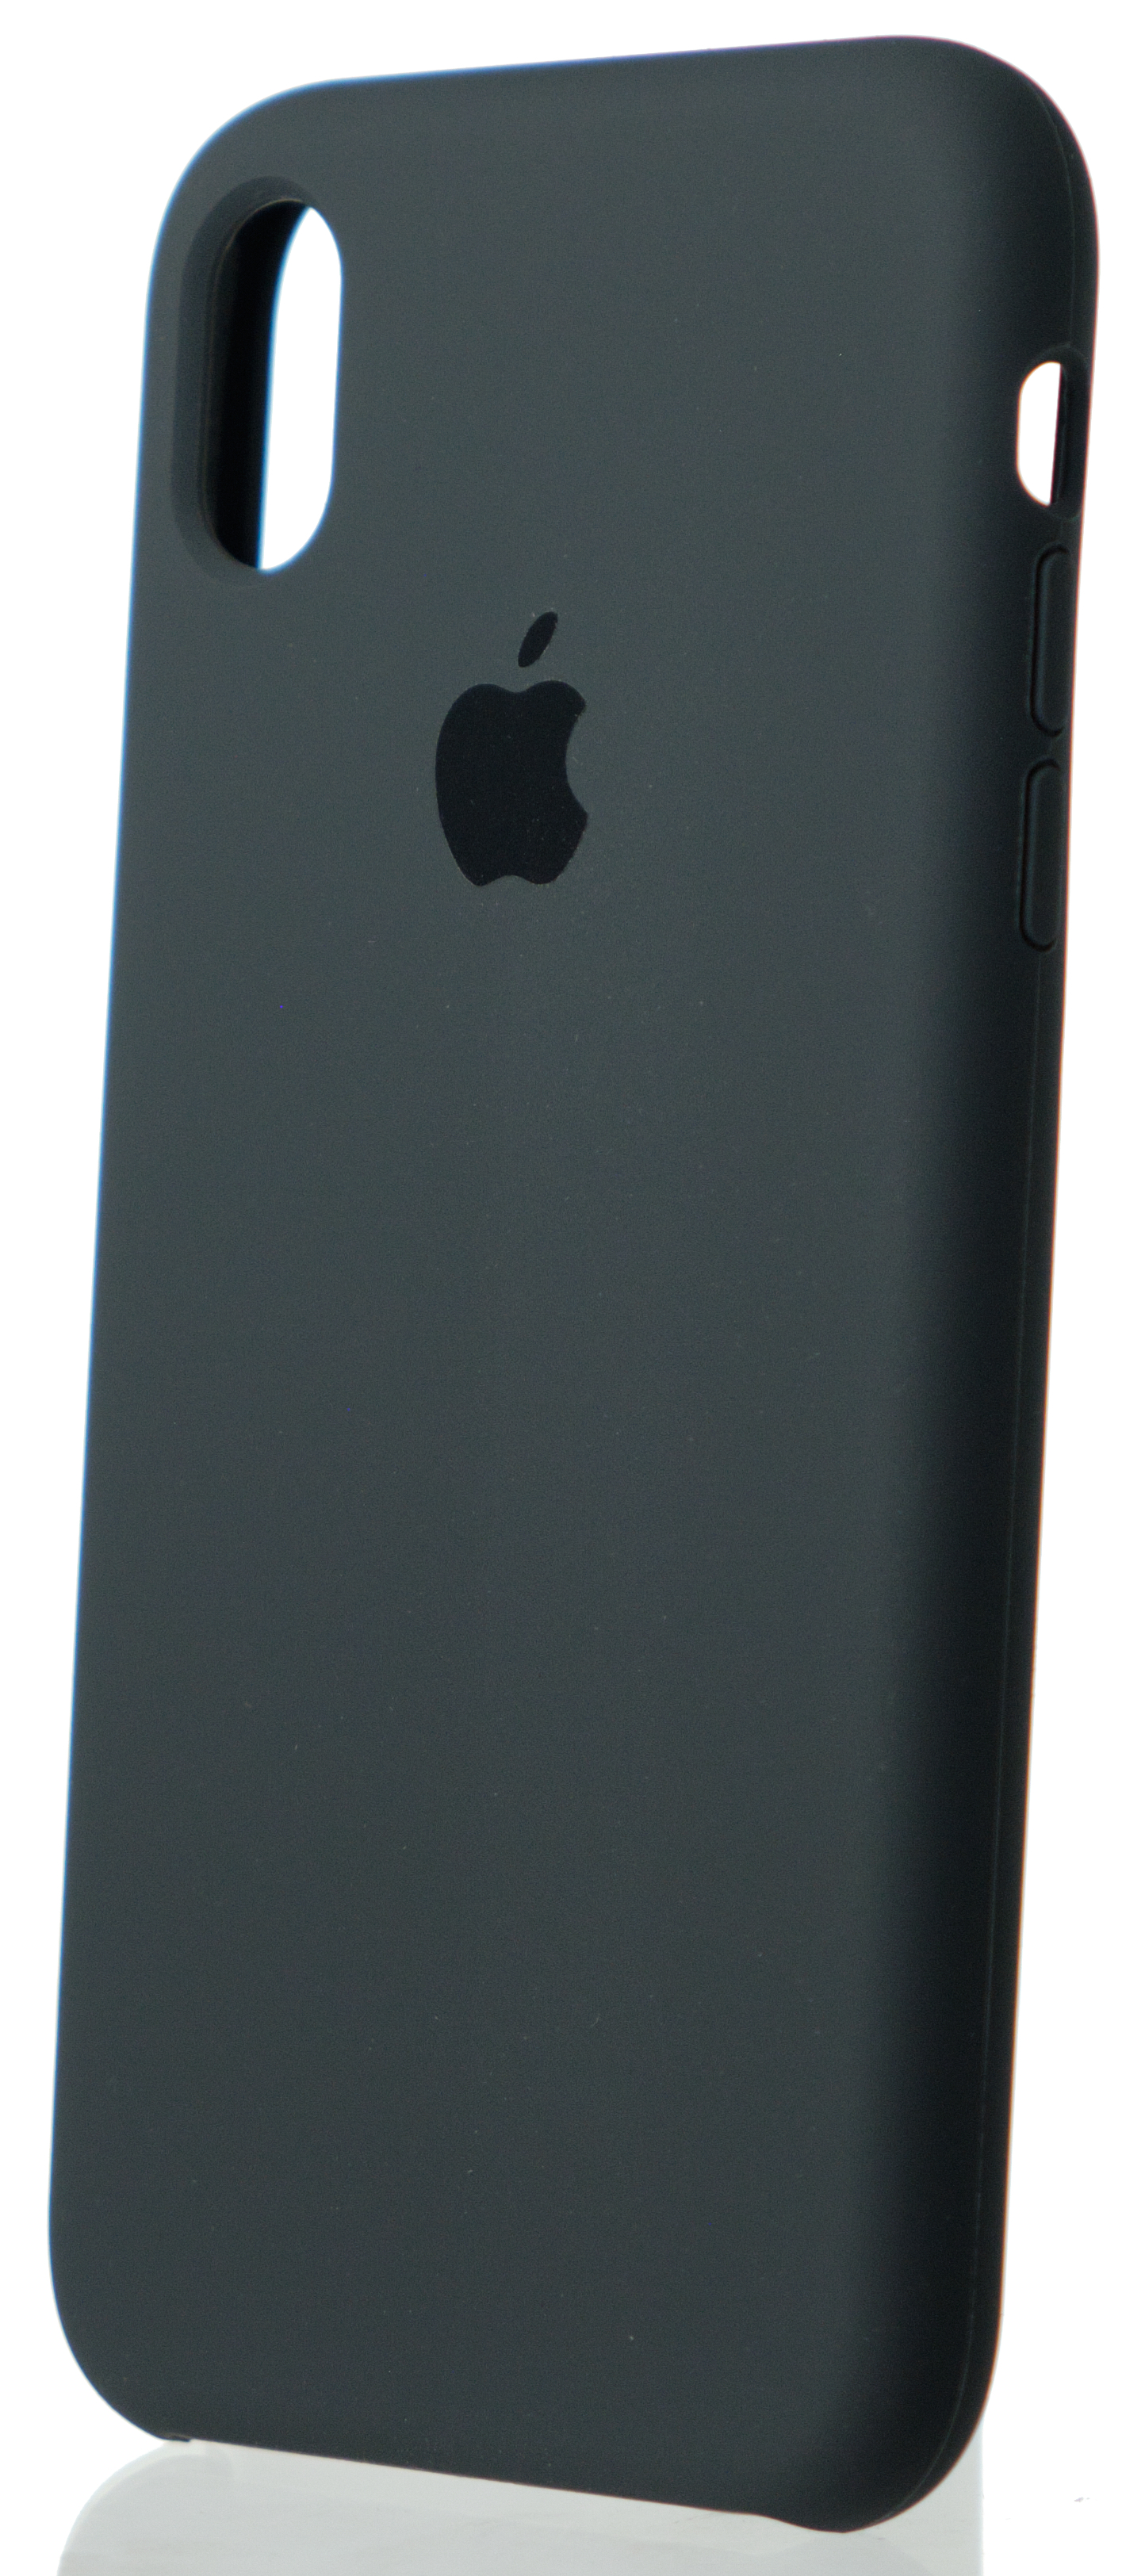 Чехол Silicone Case для iPhone XR темно-серый